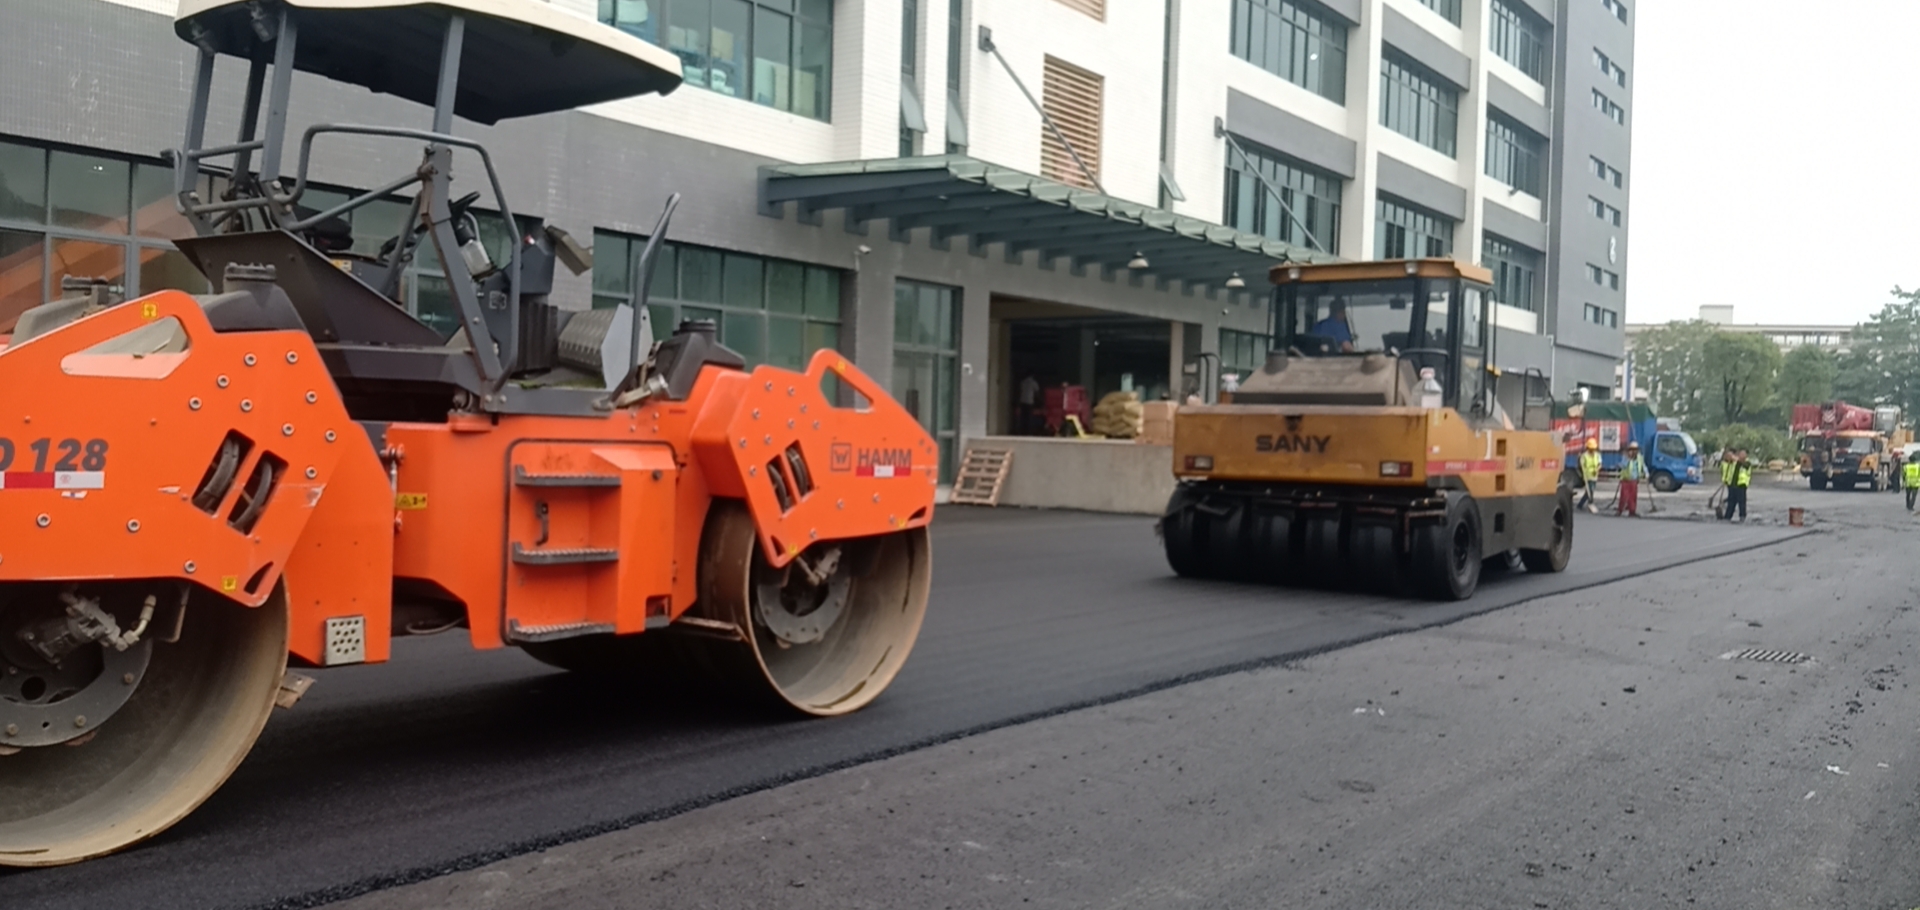 沥青混泥土材料材料又涨价了 专业承包沥青路面工程